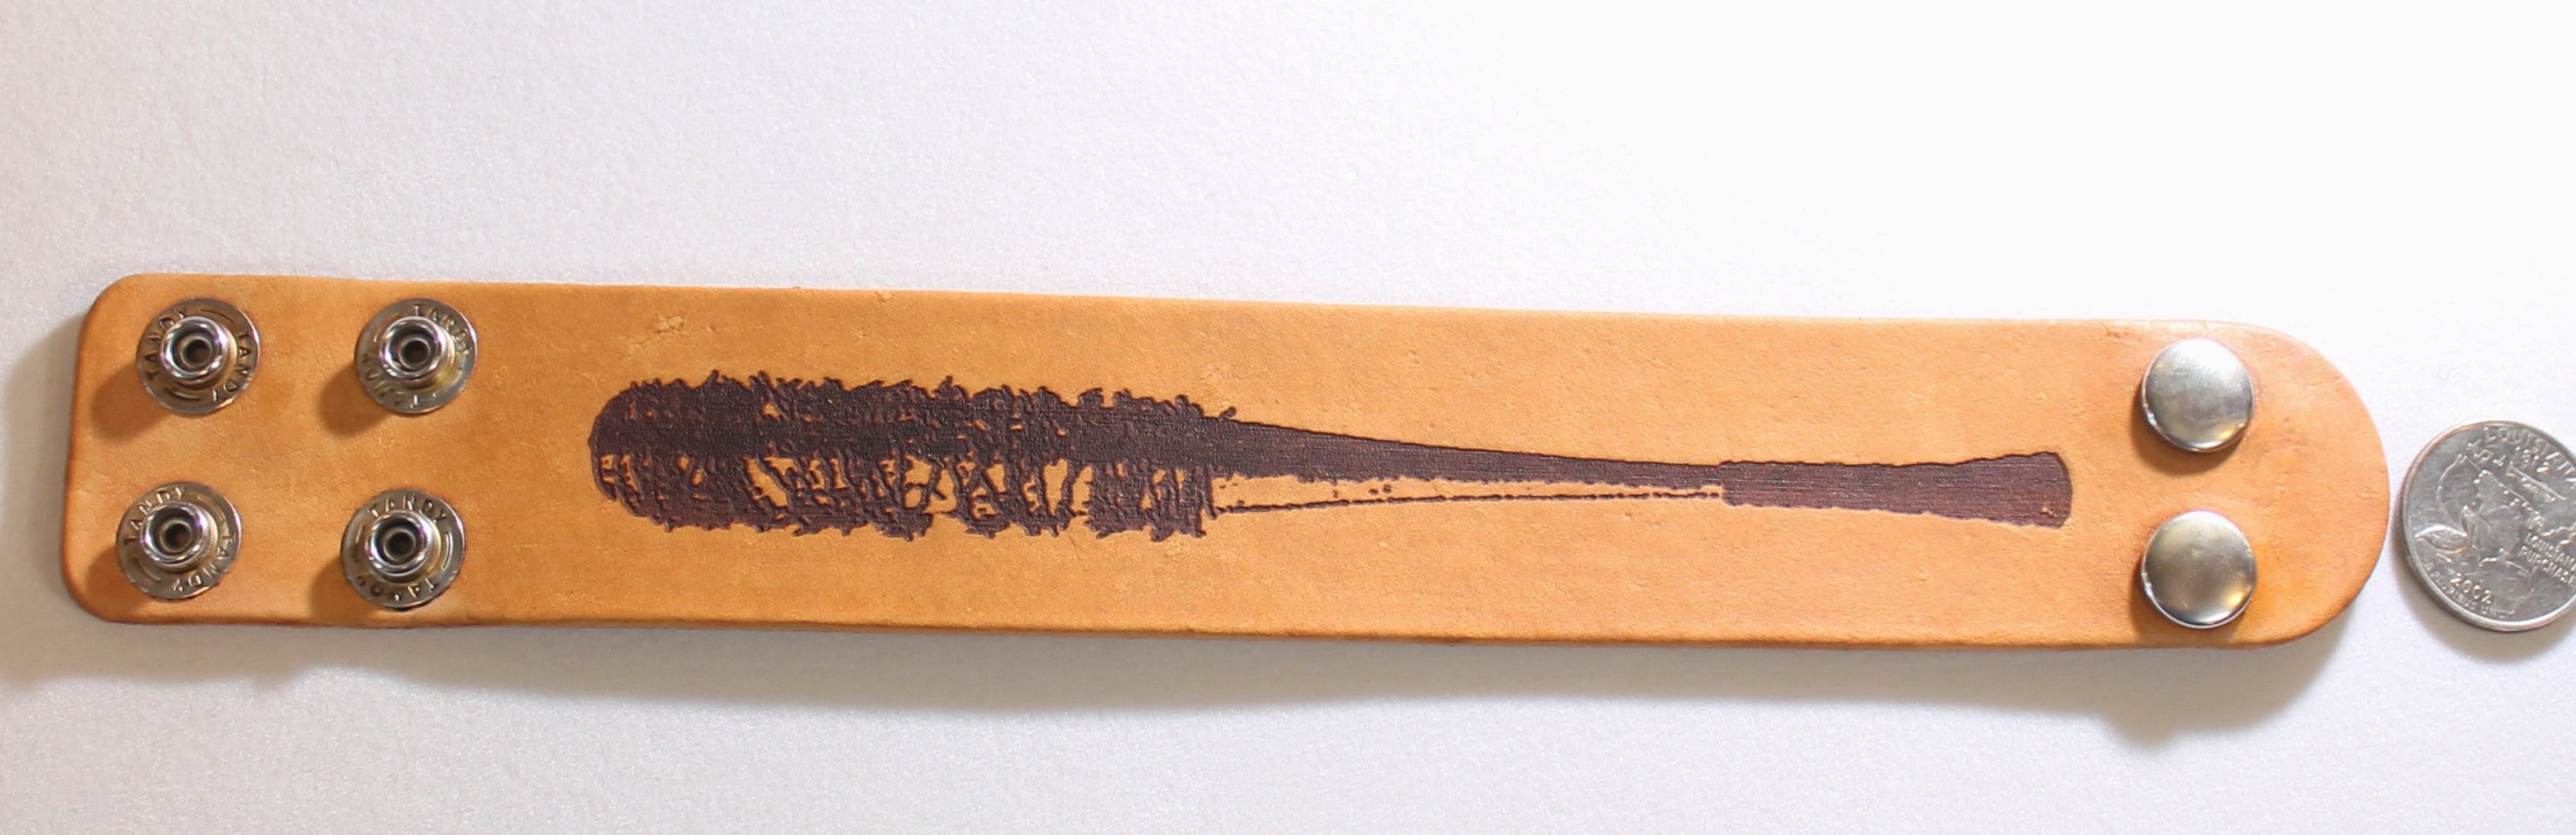 Bat barbed wired, Negan, walking dead laser engraved stained leather bracelet - Samstagsandmore